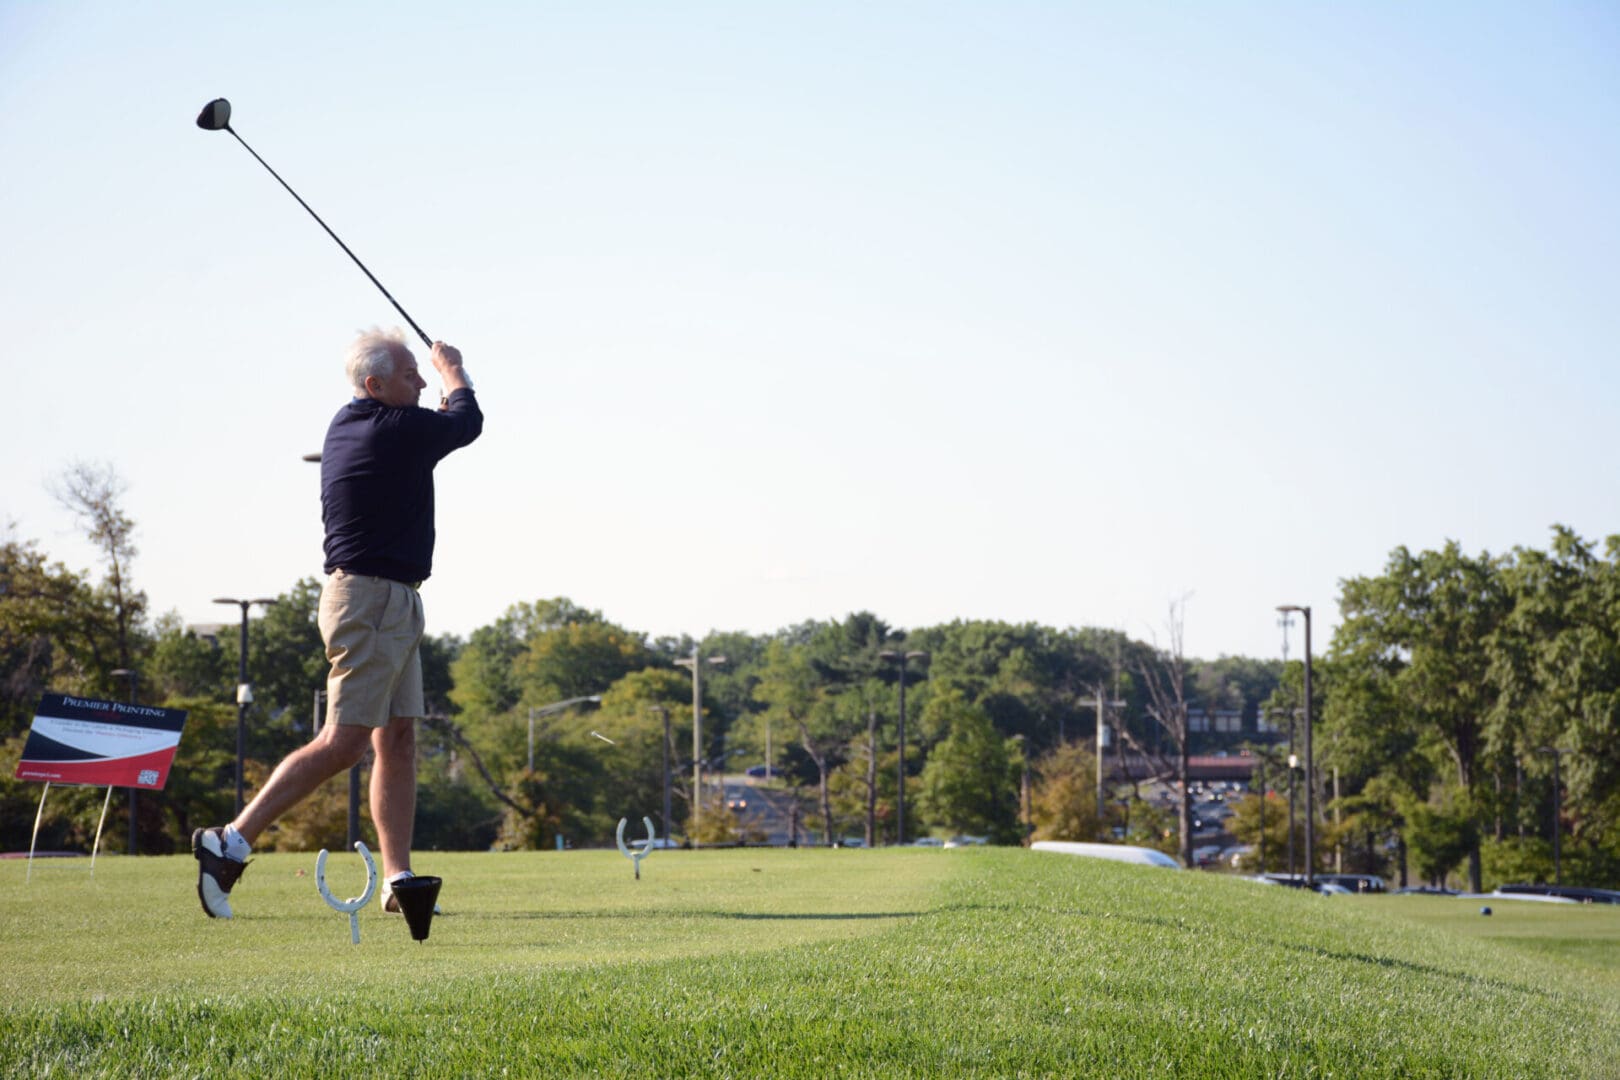 man with white hair wearing black shirt playing golf